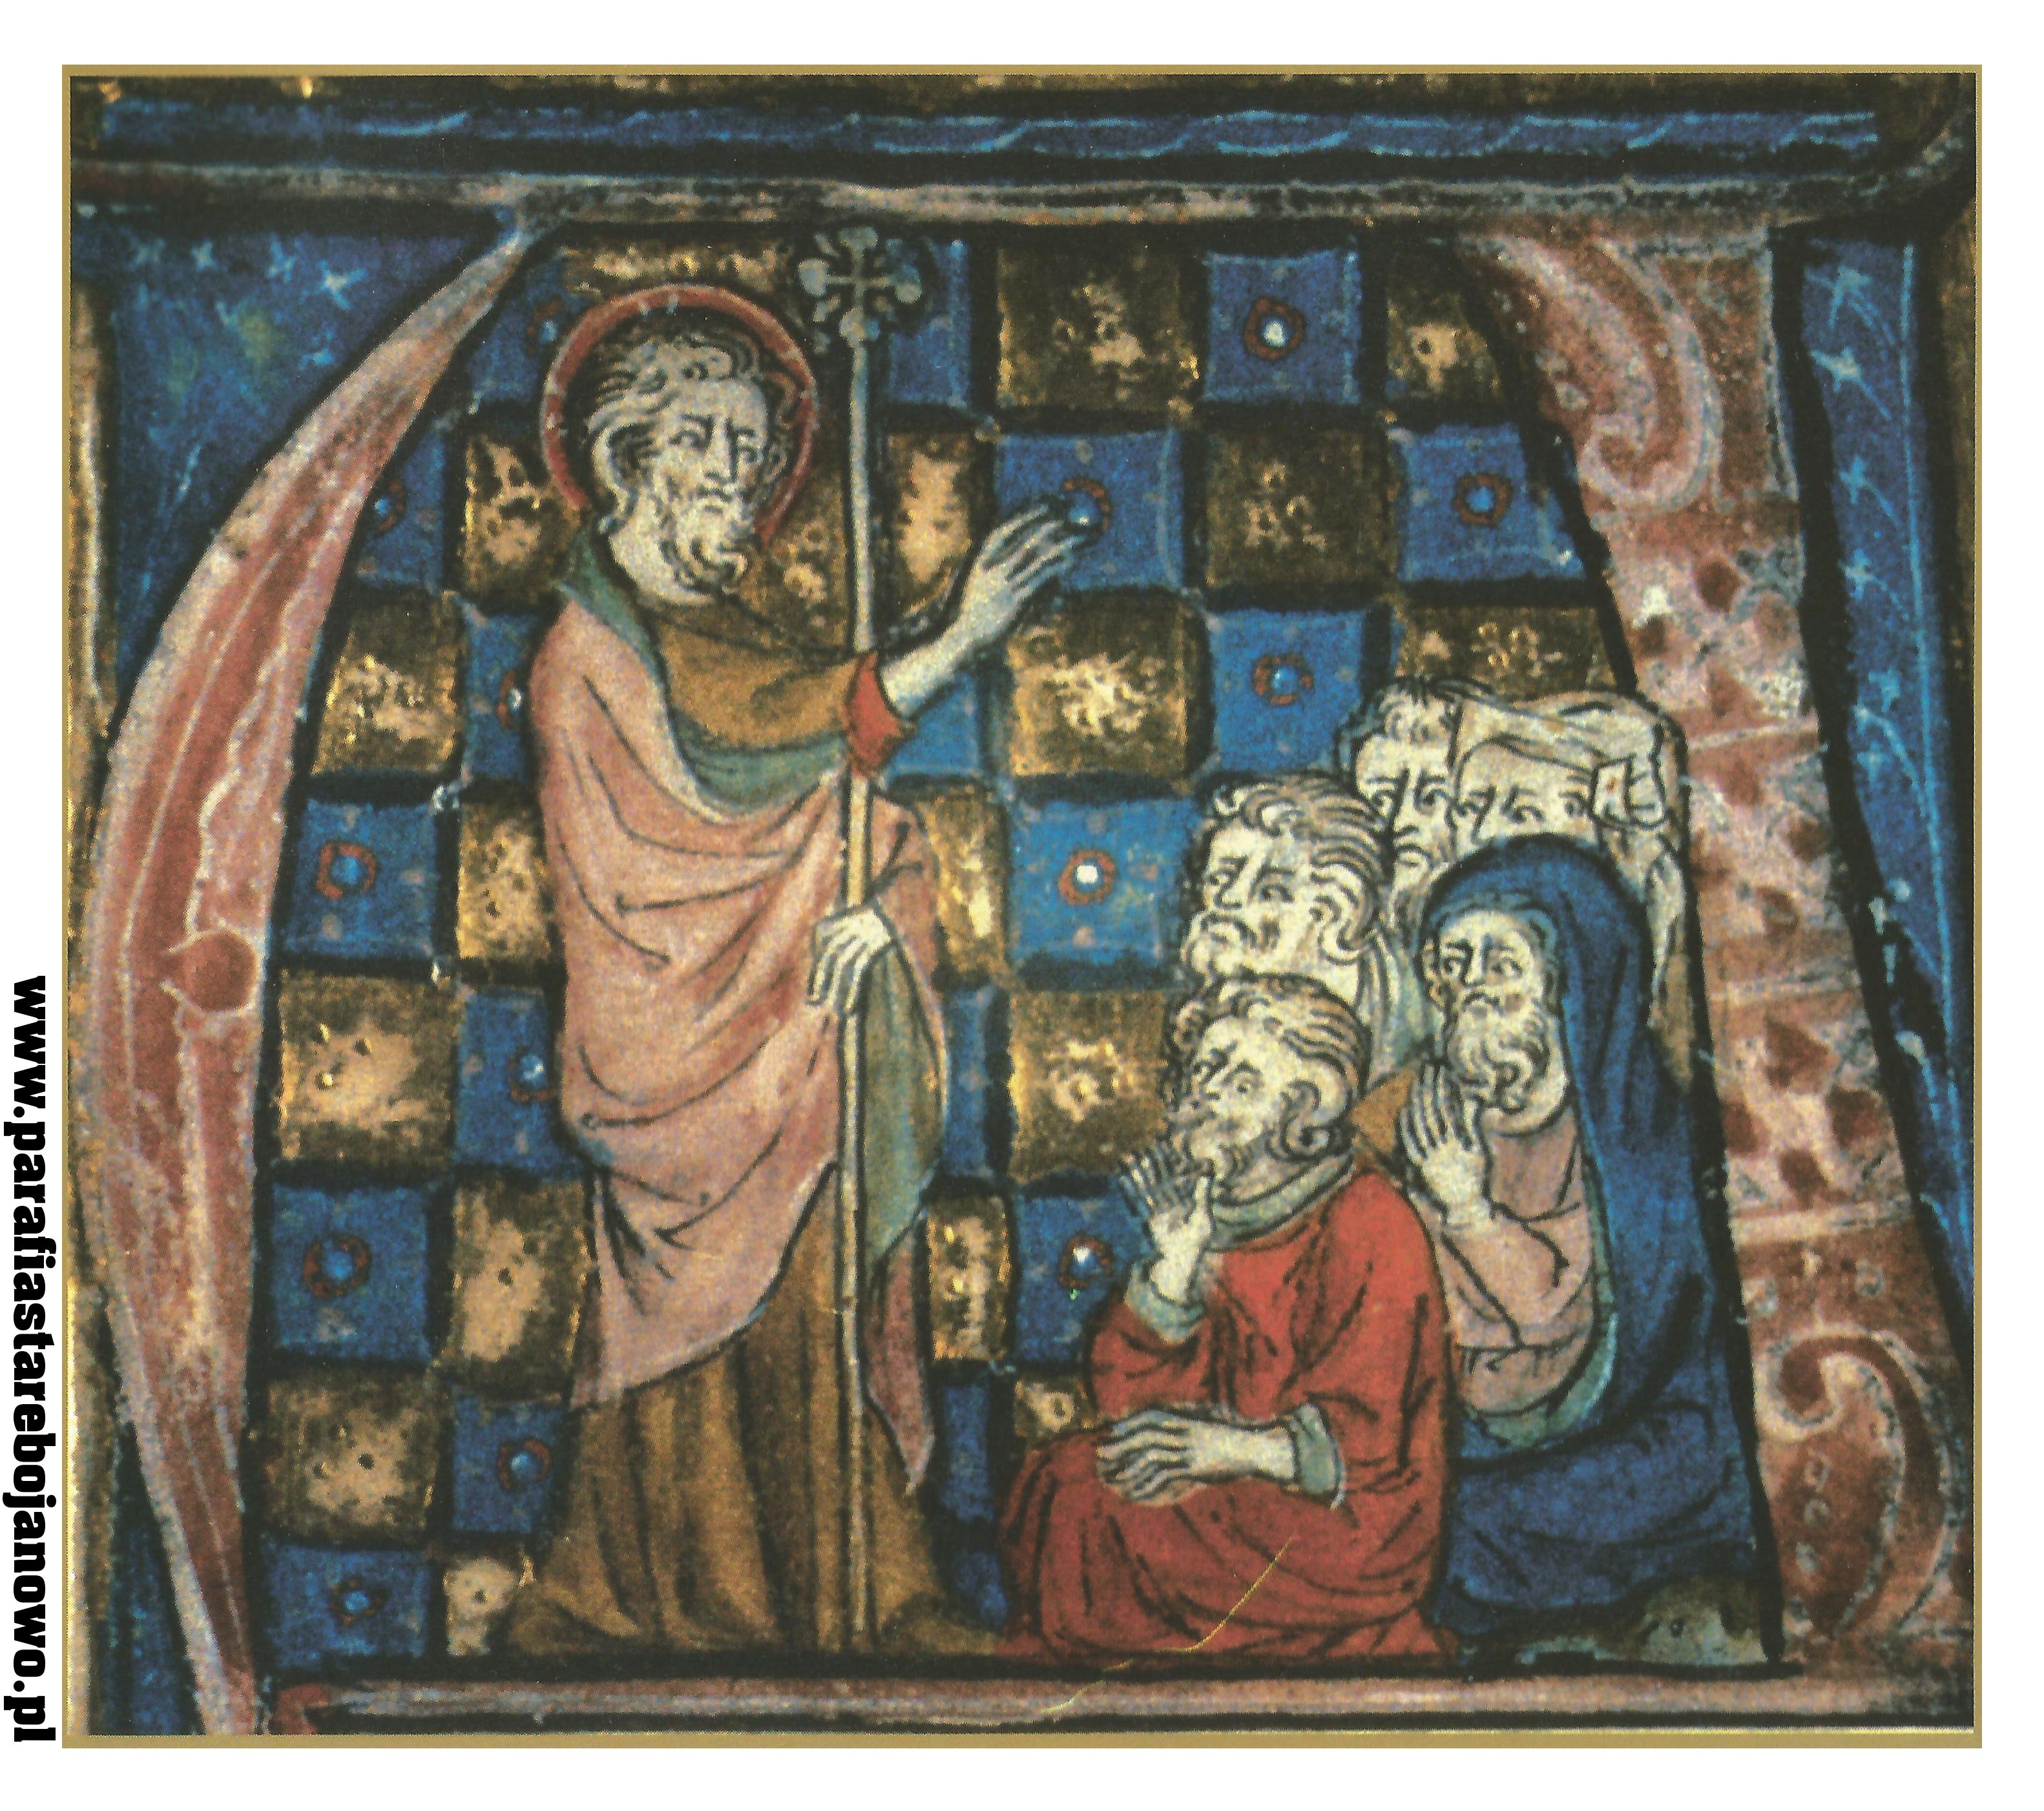 Chrystus nauczający, XIII w., Bodleian Library, Oksford